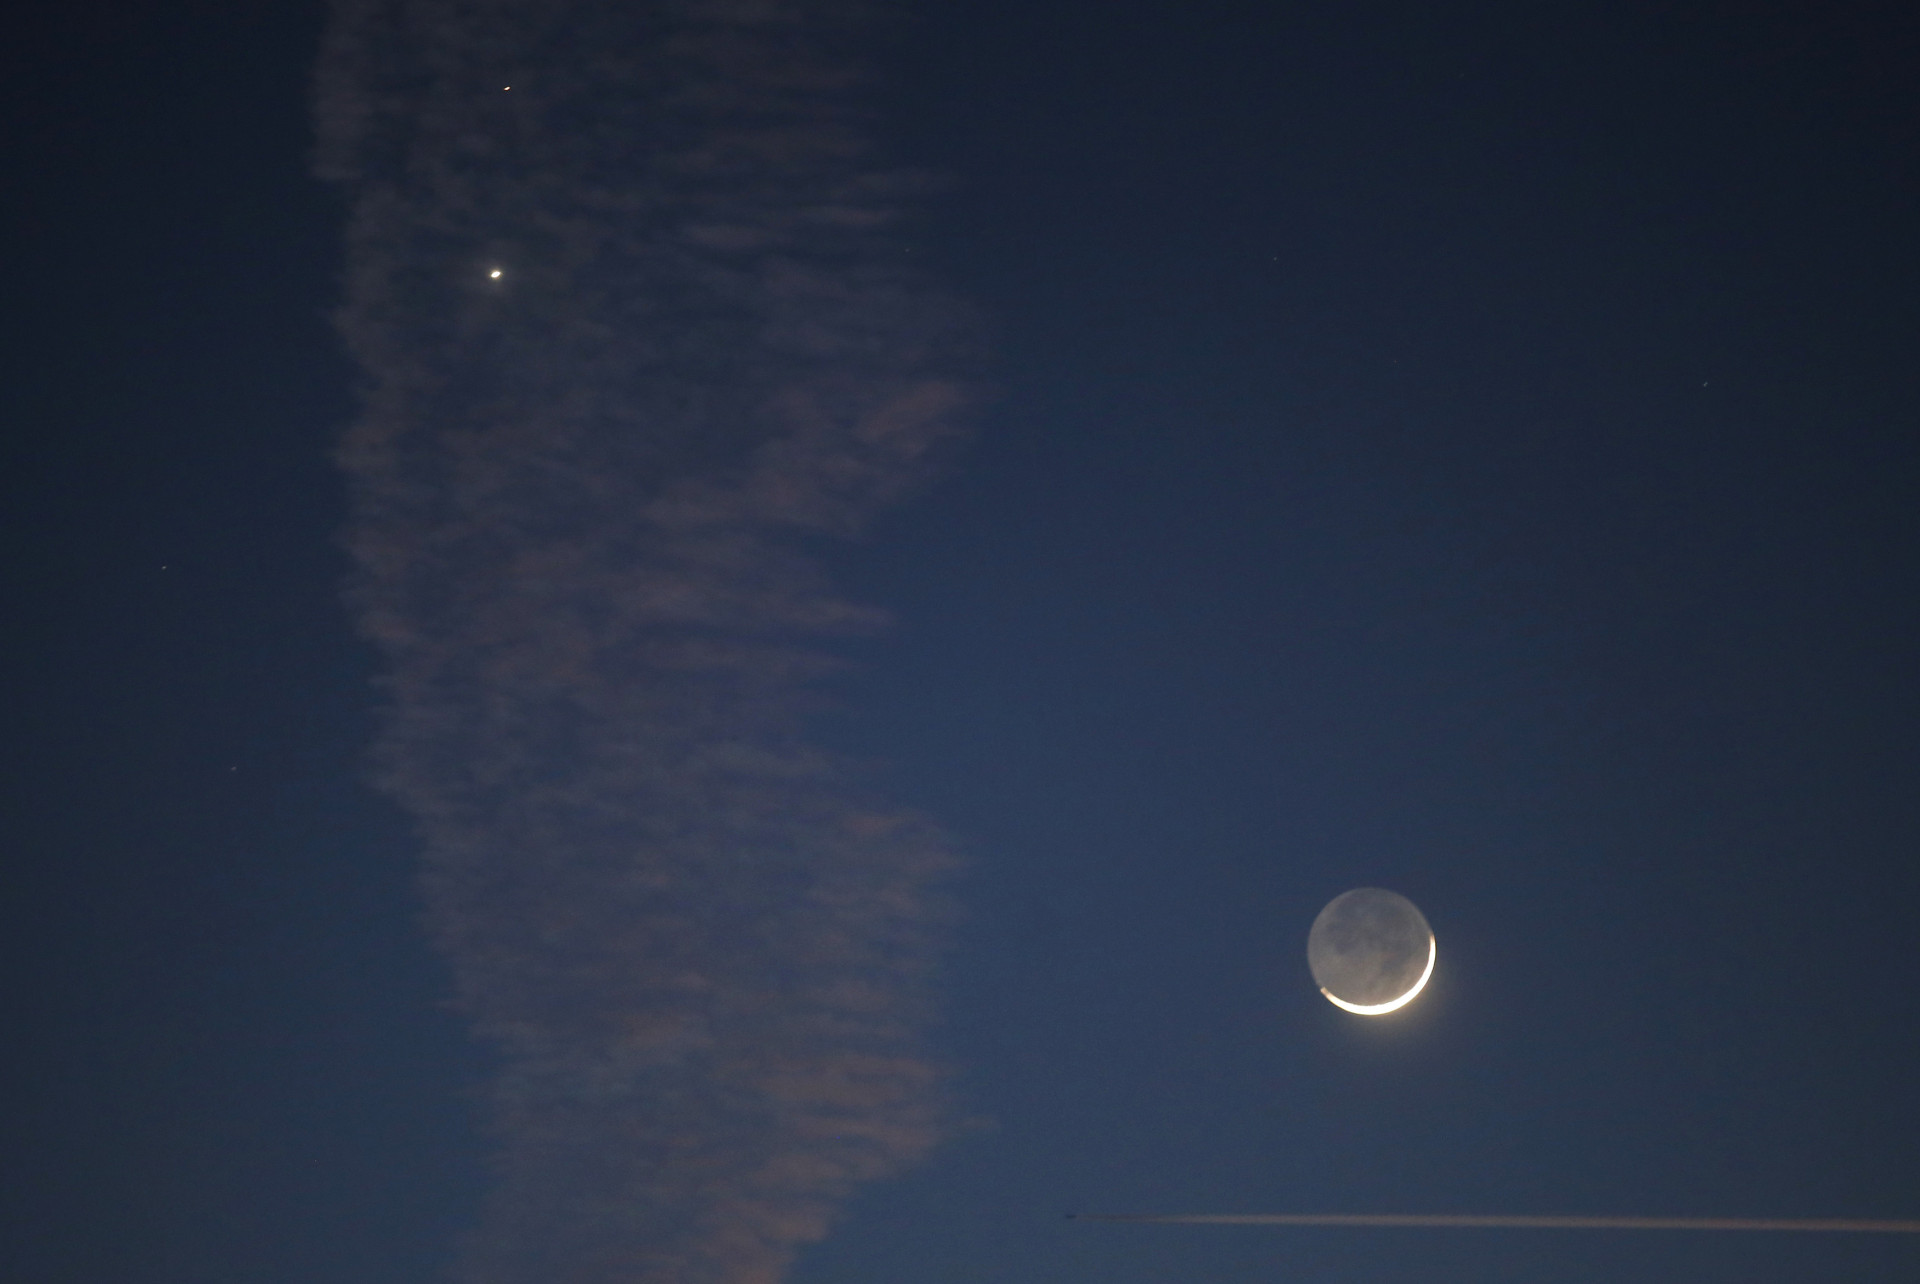 Na imagem, podemos ver a Lua crescente e os planetas Vênus e Marte visíveis nas proximidades.